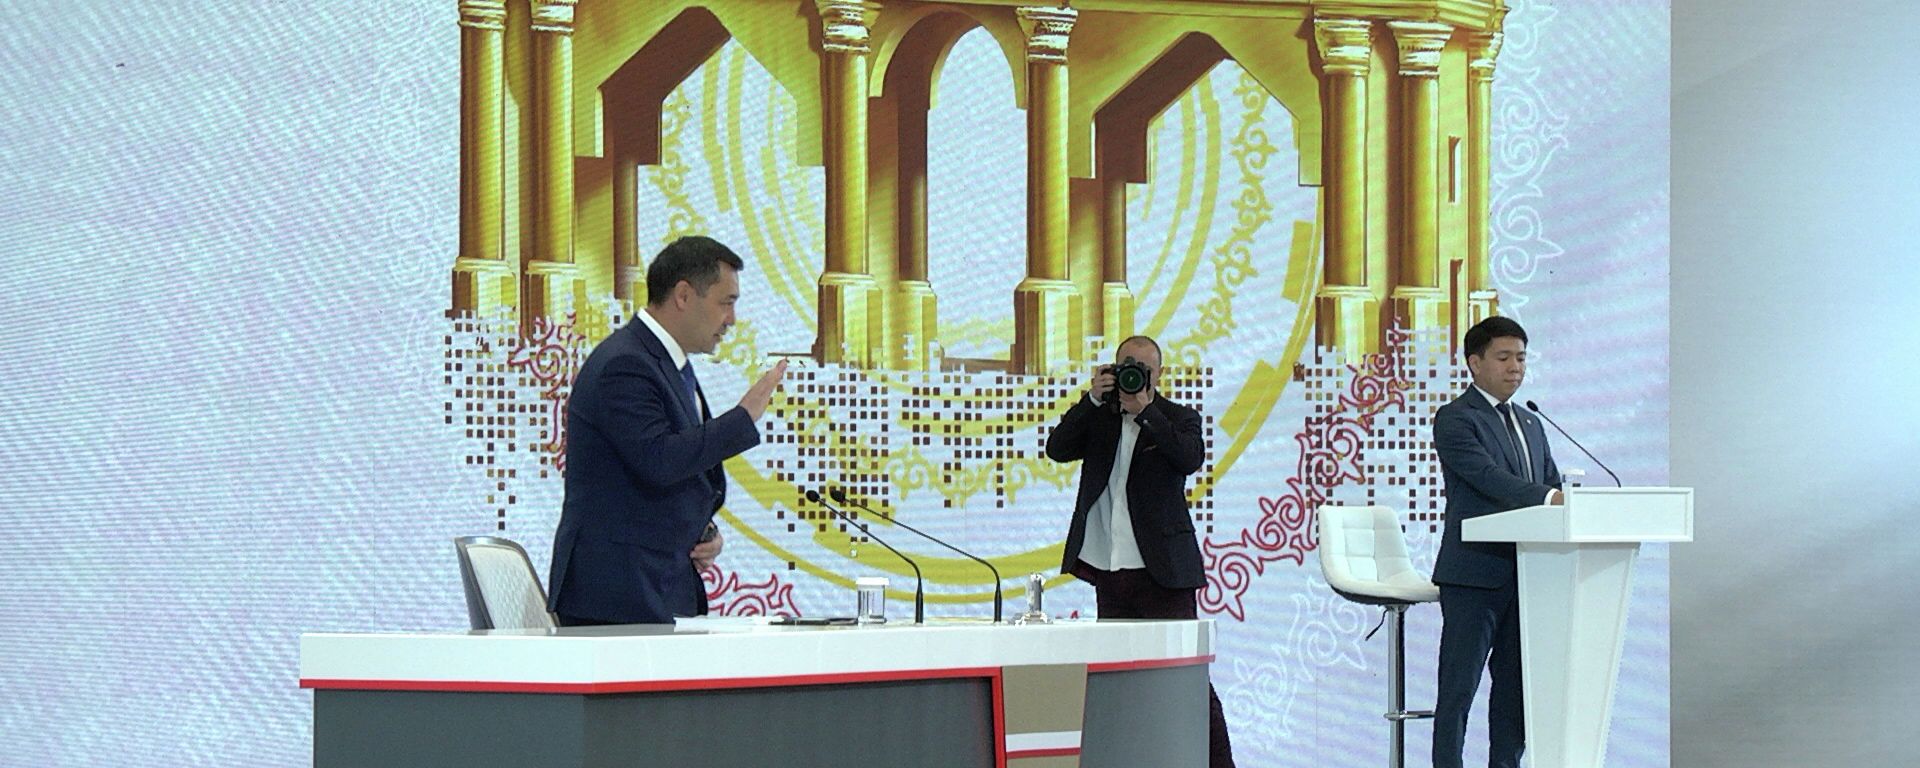 О чем говорил Садыр Жапаров на пресс-конференции — обзорное видео - Sputnik Кыргызстан, 1920, 23.10.2021